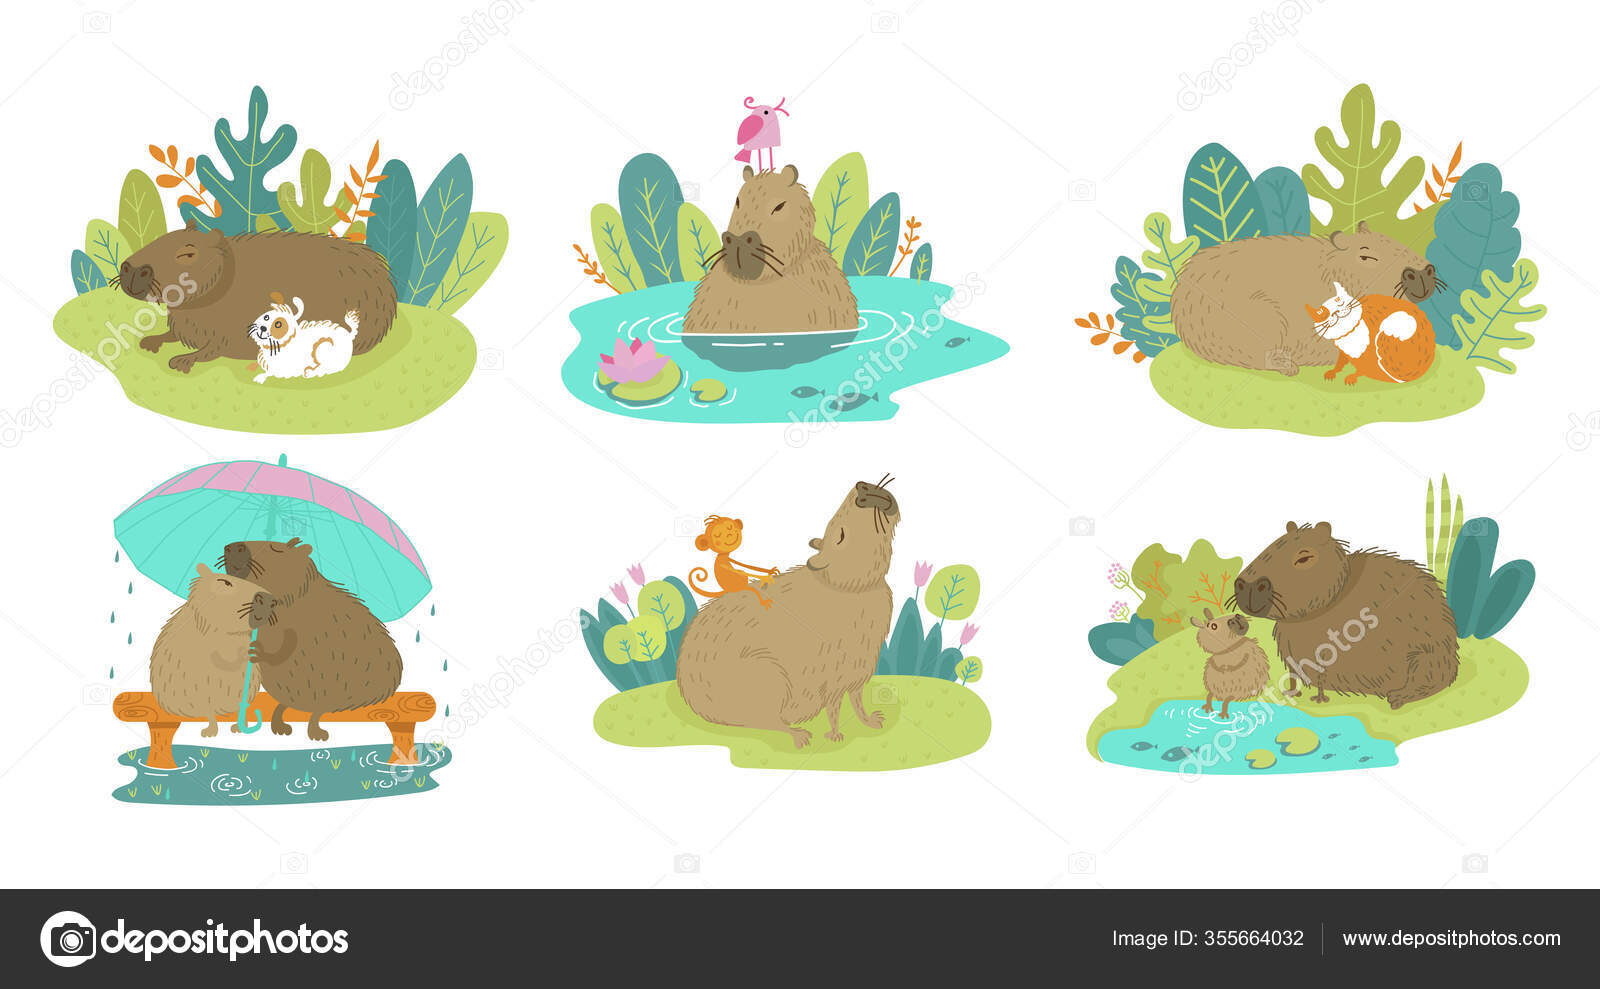 Ícone dos desenhos animados Capybara em design plano imagem